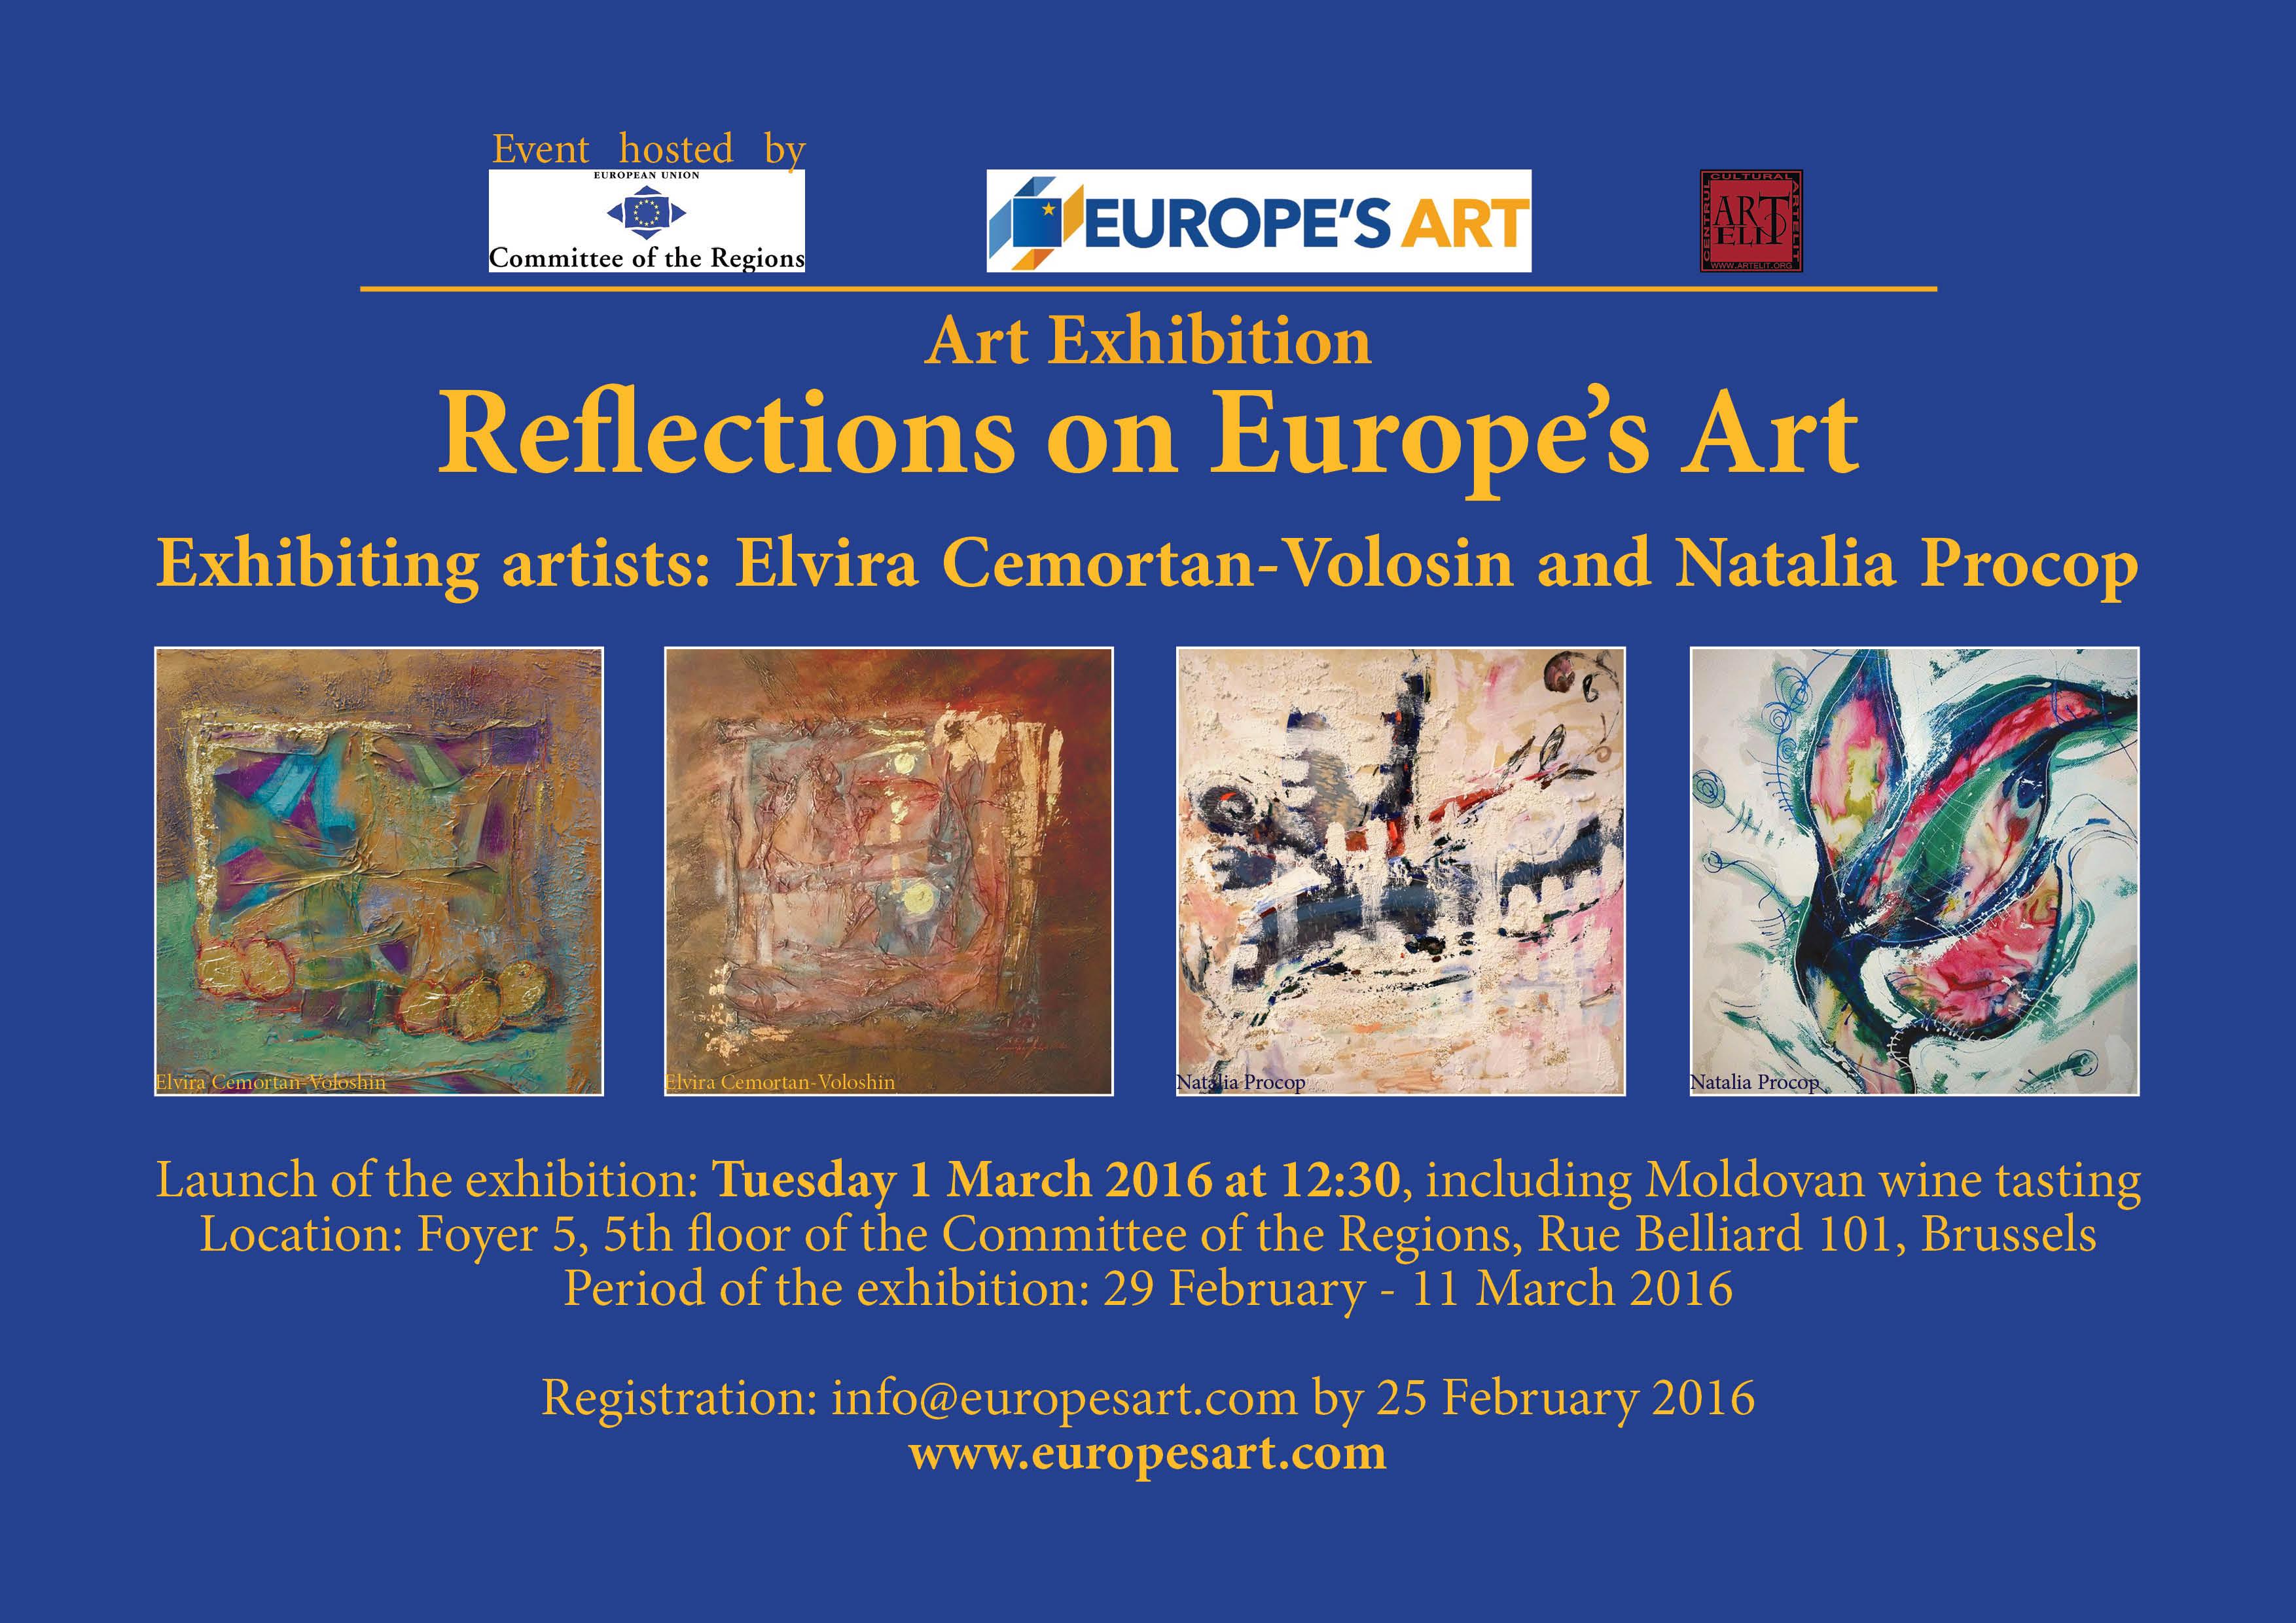 Expoziția a două pictoriţe moldovene a fost deschisă la Bruxelles